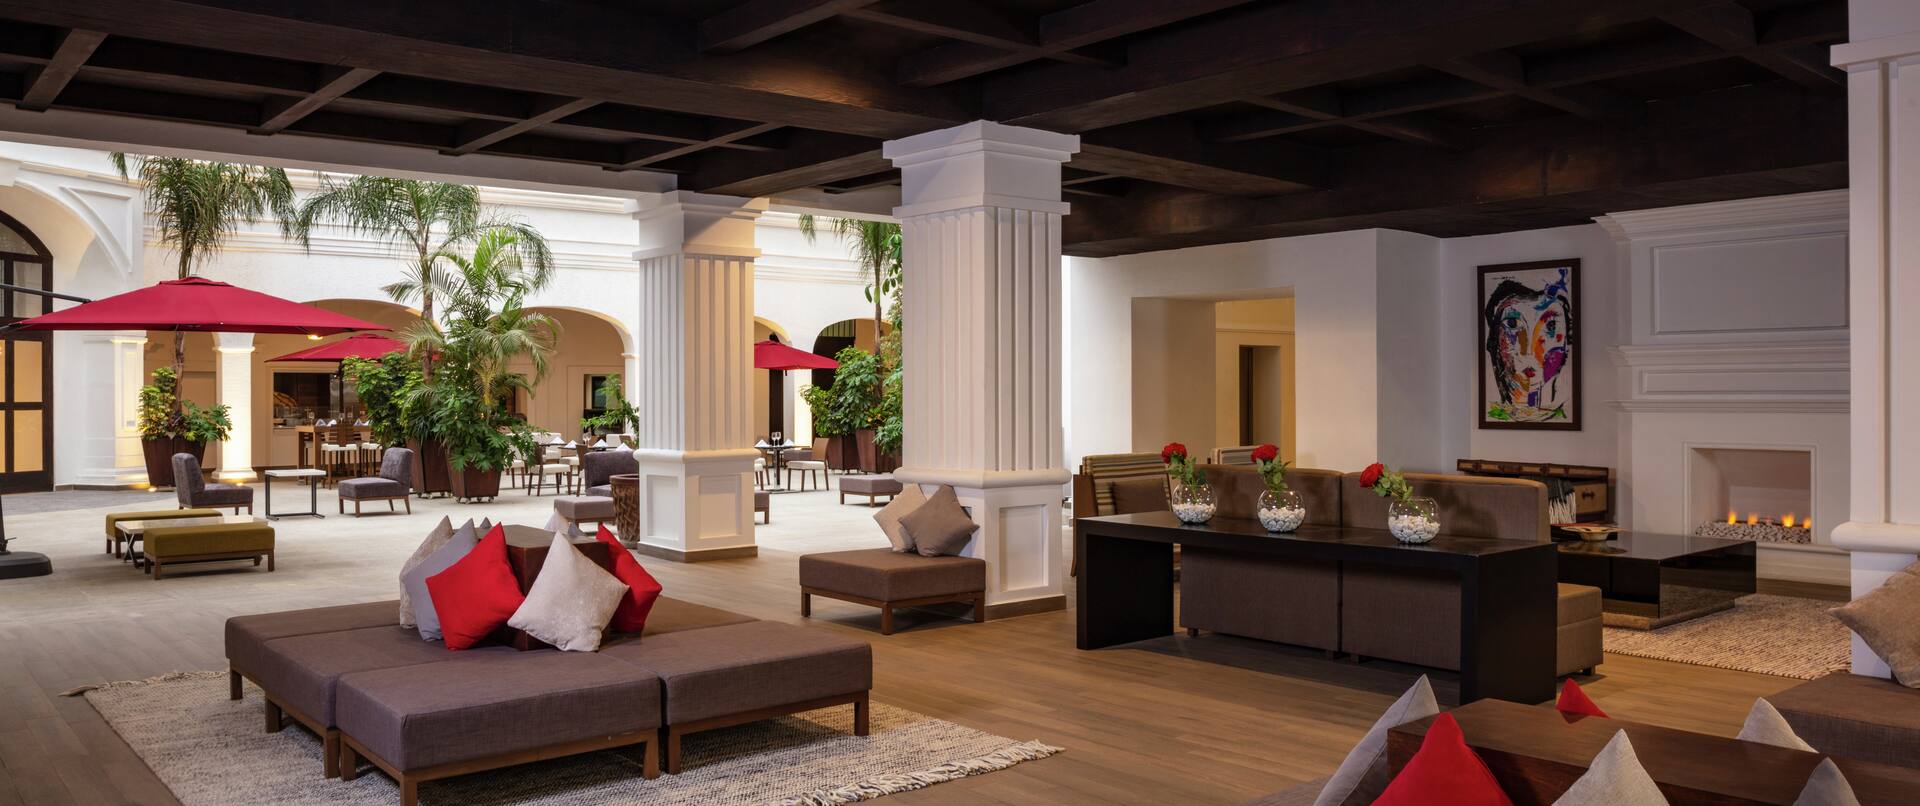 Área de lobby y lounge con cómodos sillones disponibles y detalles arquitectónicos elegantes 